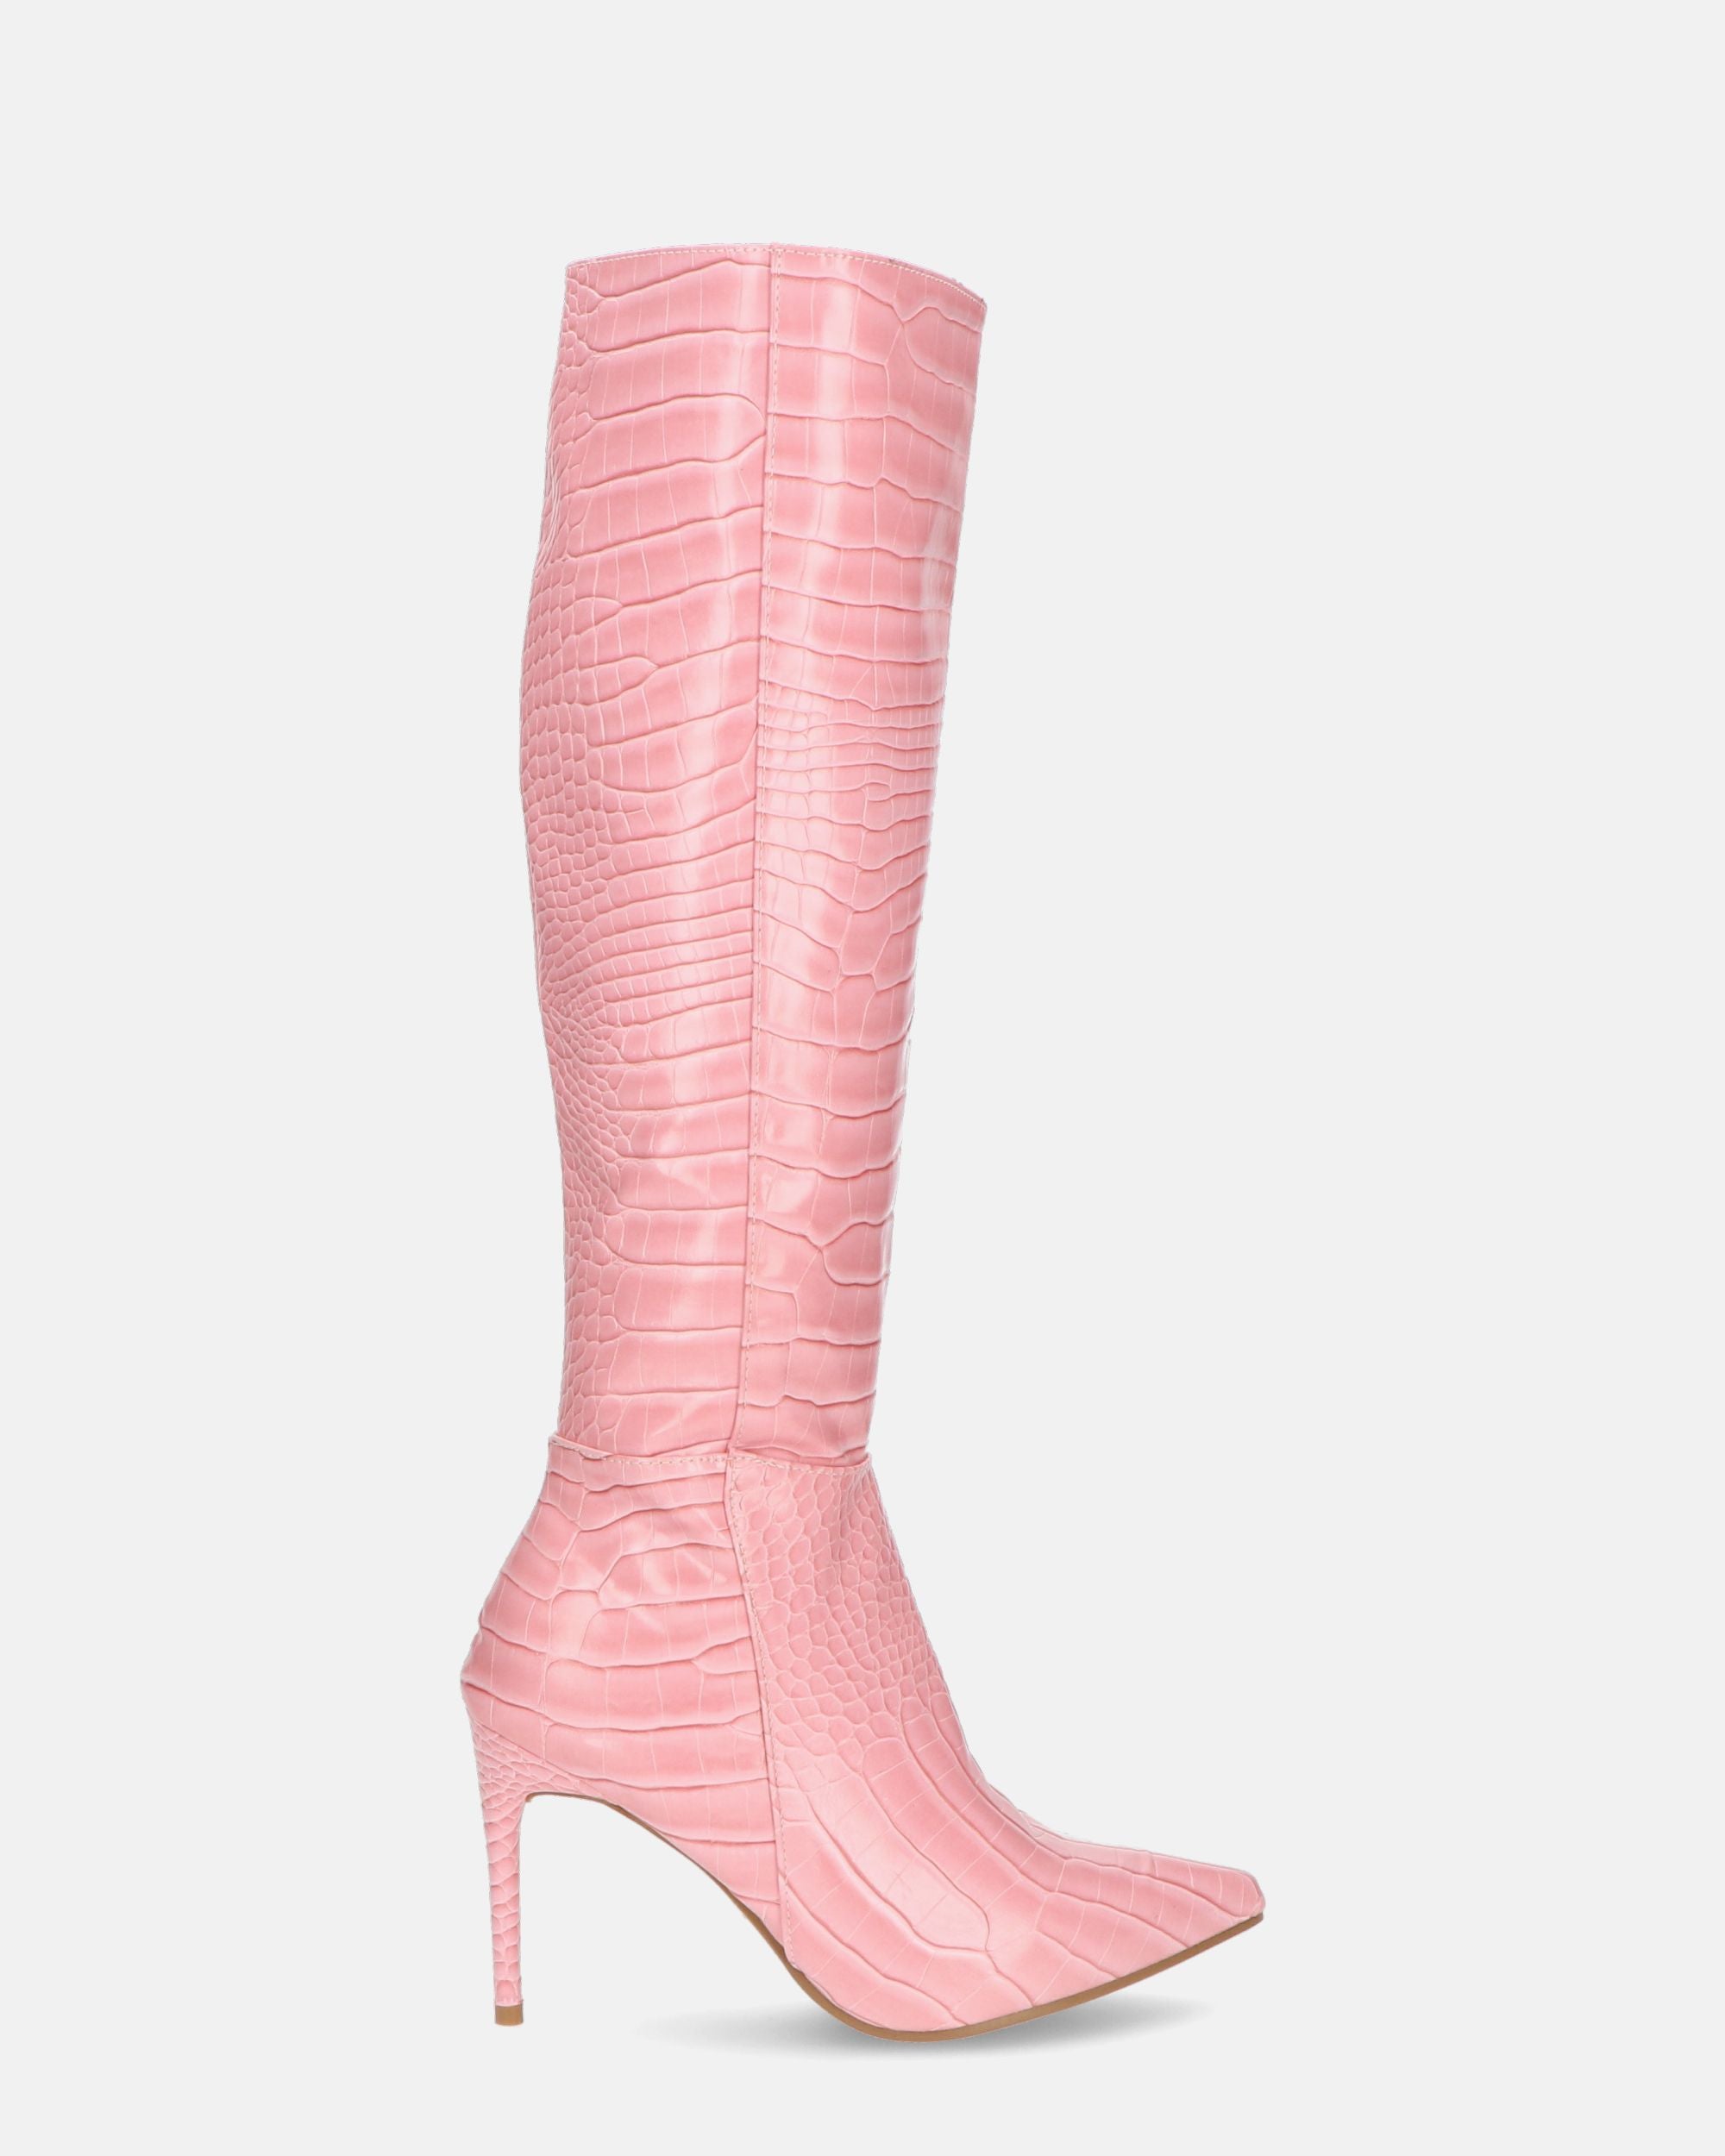 LAILA - botas altas en ecopiel rosa con textura de cocodrilo y cinturón lateral